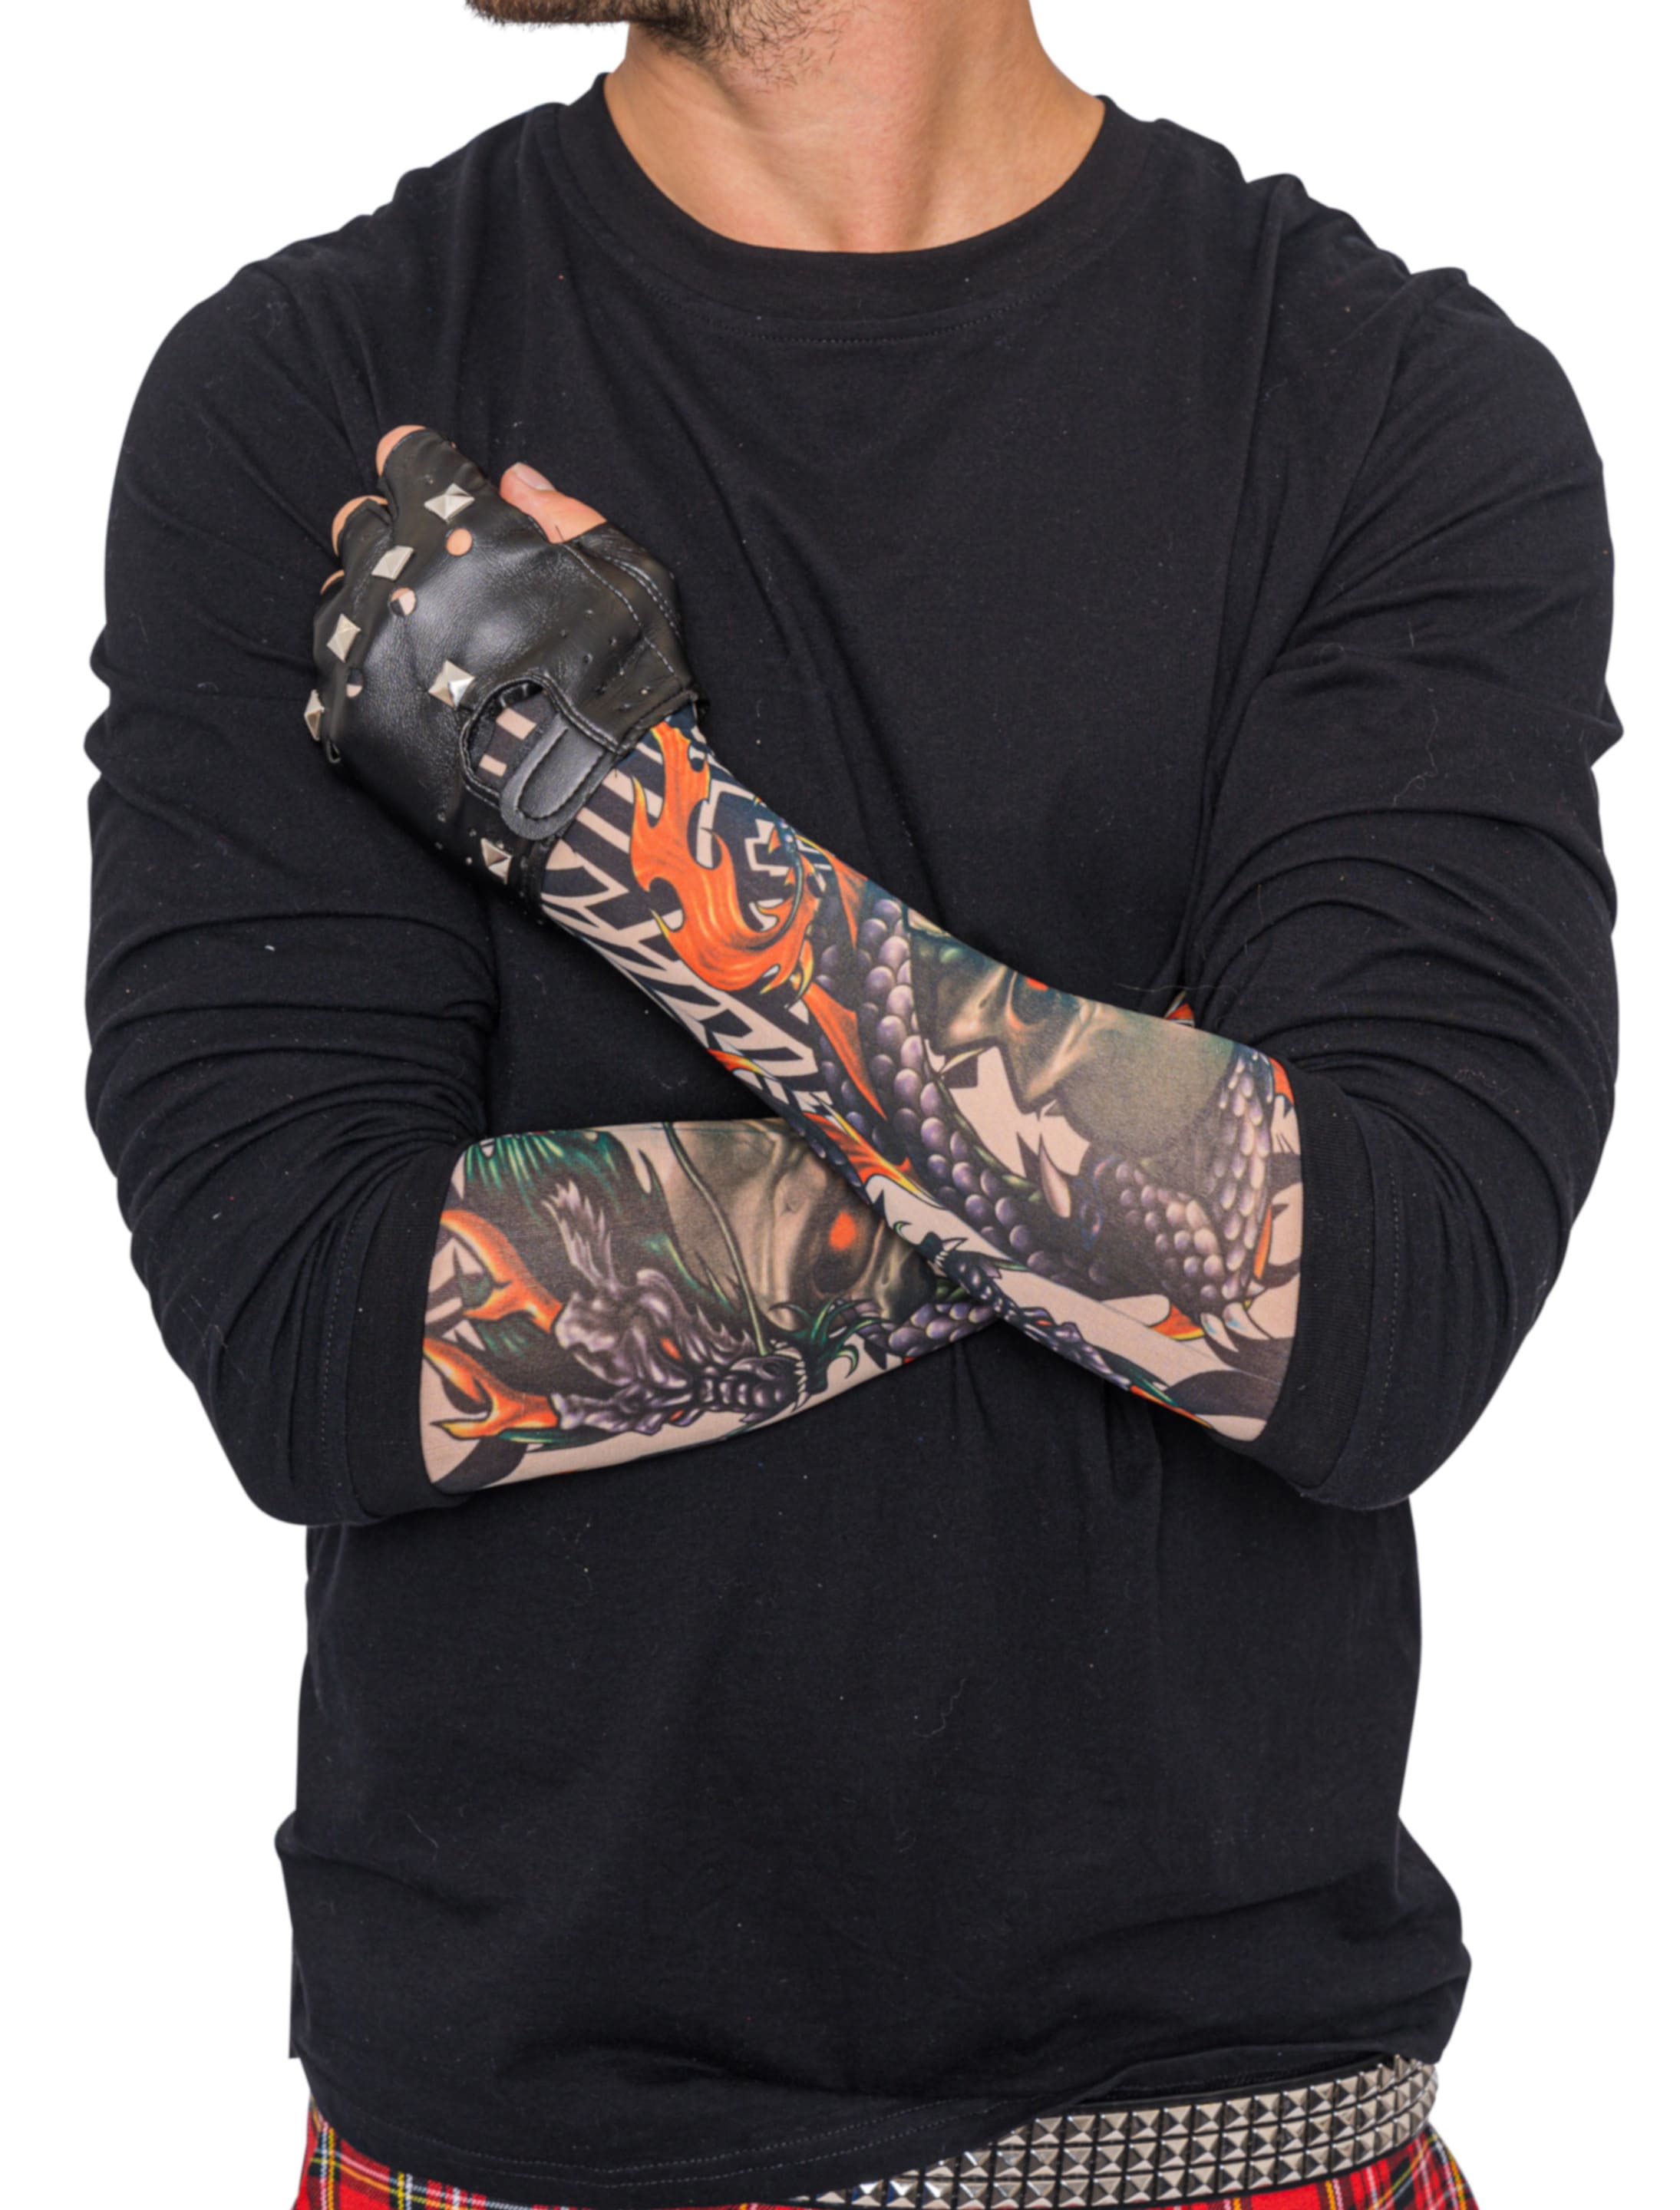 Tattoo-Armstulpe Drache mit Totenkopf